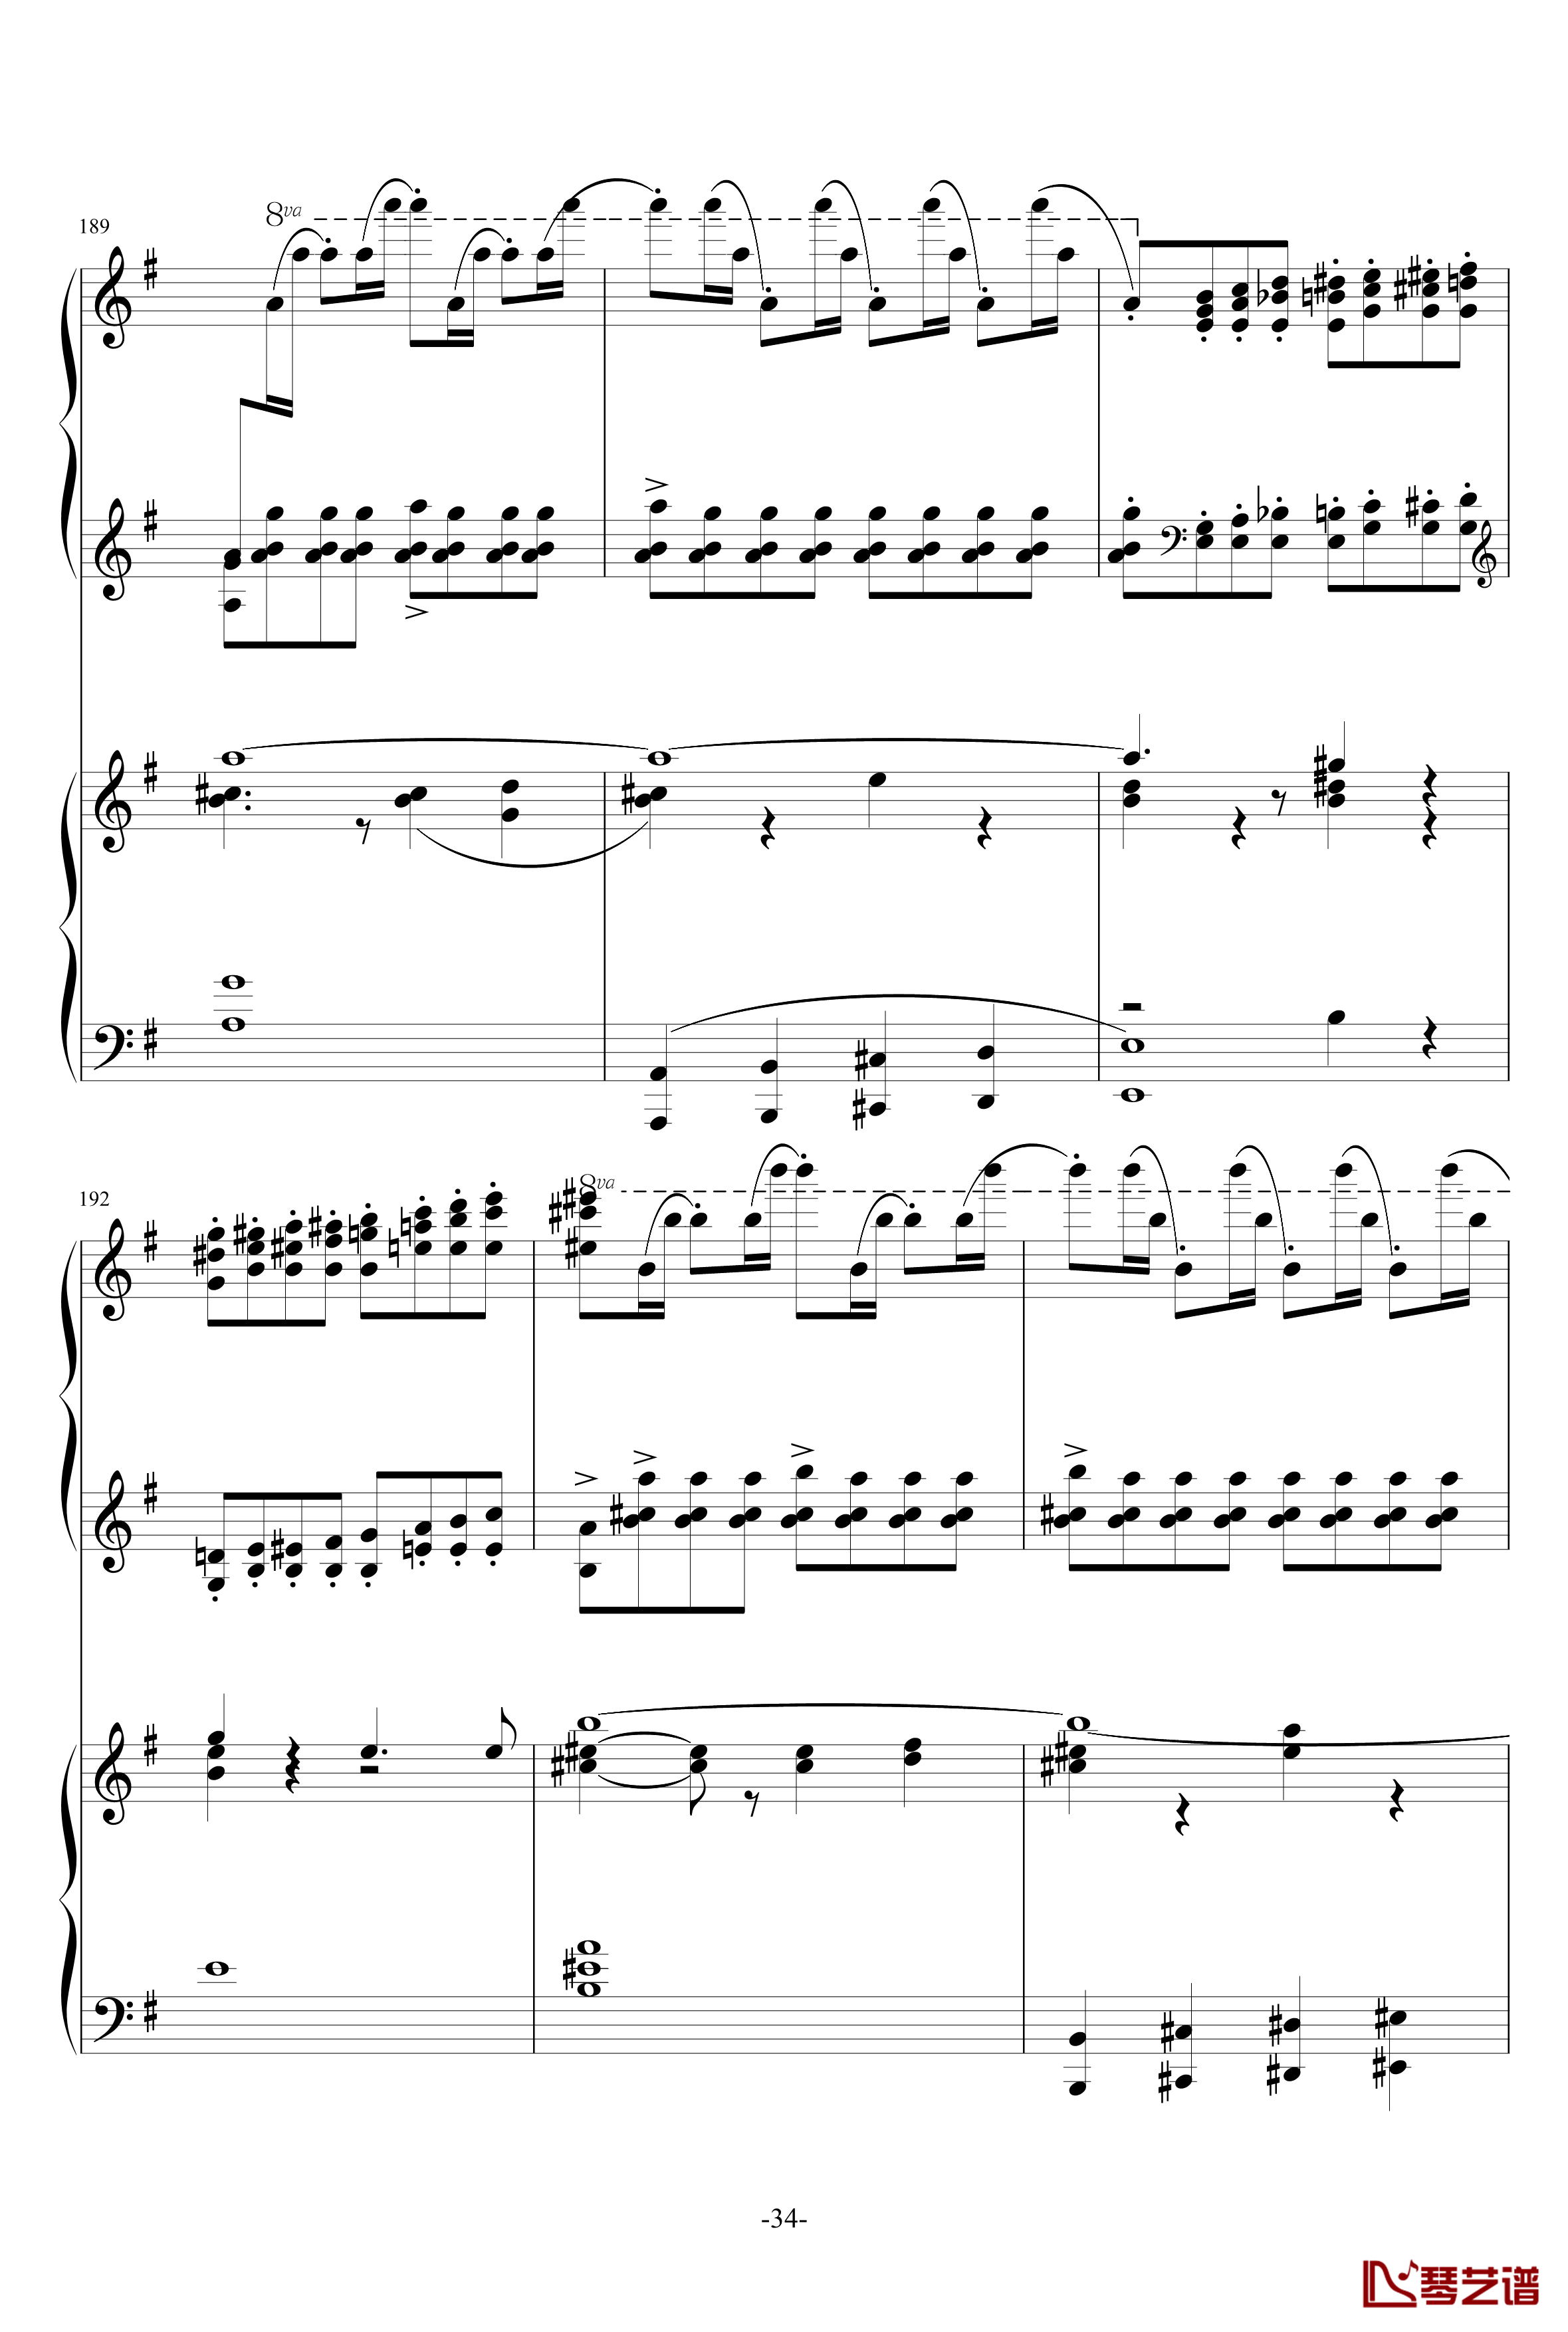 普罗科菲耶夫第三钢琴协奏曲第二乐章钢琴谱34